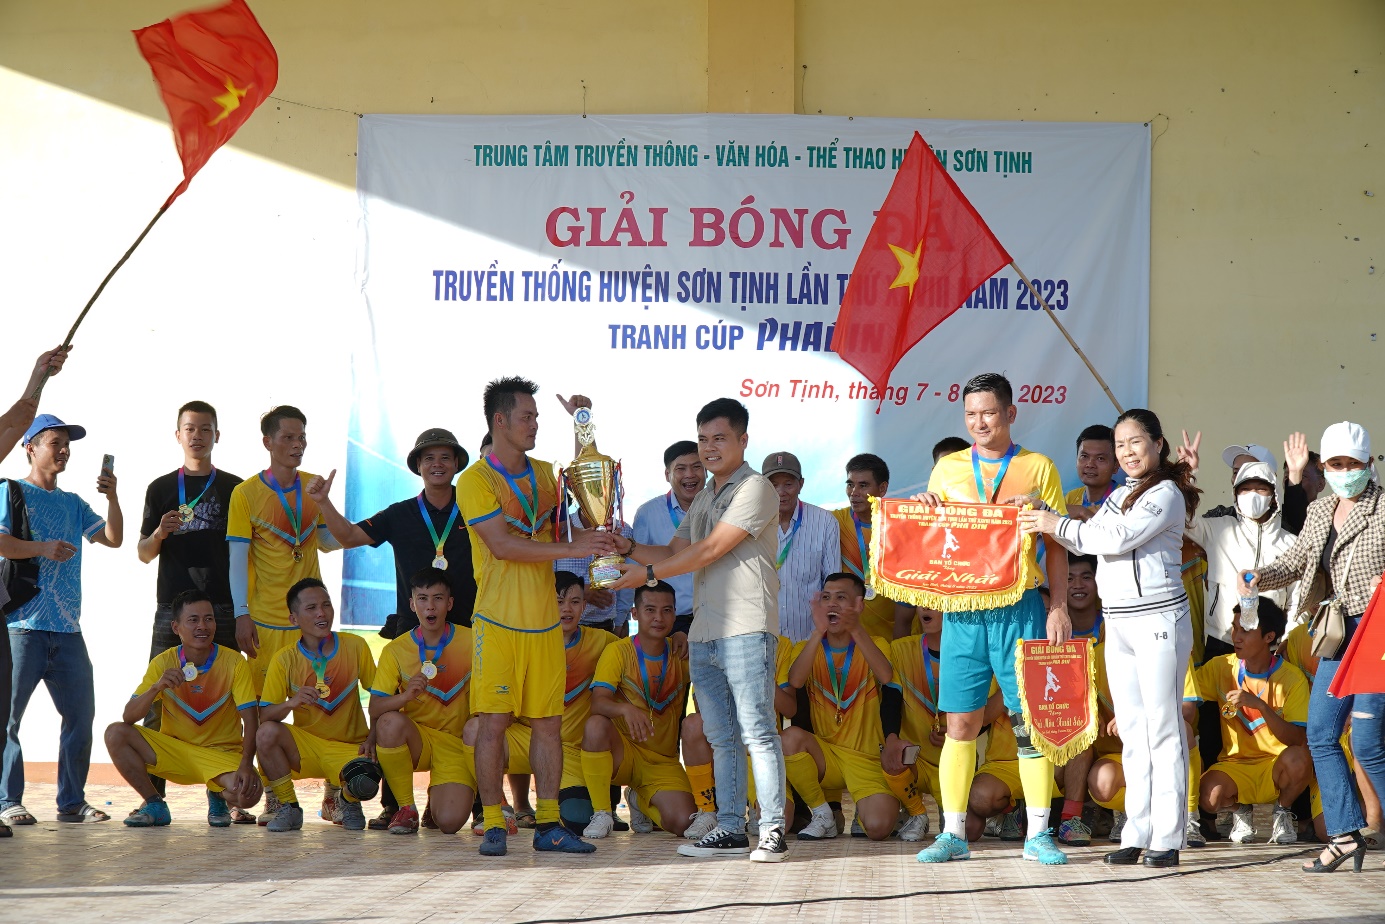 Bế mạc Giải bóng đá truyền thống huyện Sơn Tịnh lần thứ XXVIII năm 2023 tranh cúp Pha Đin